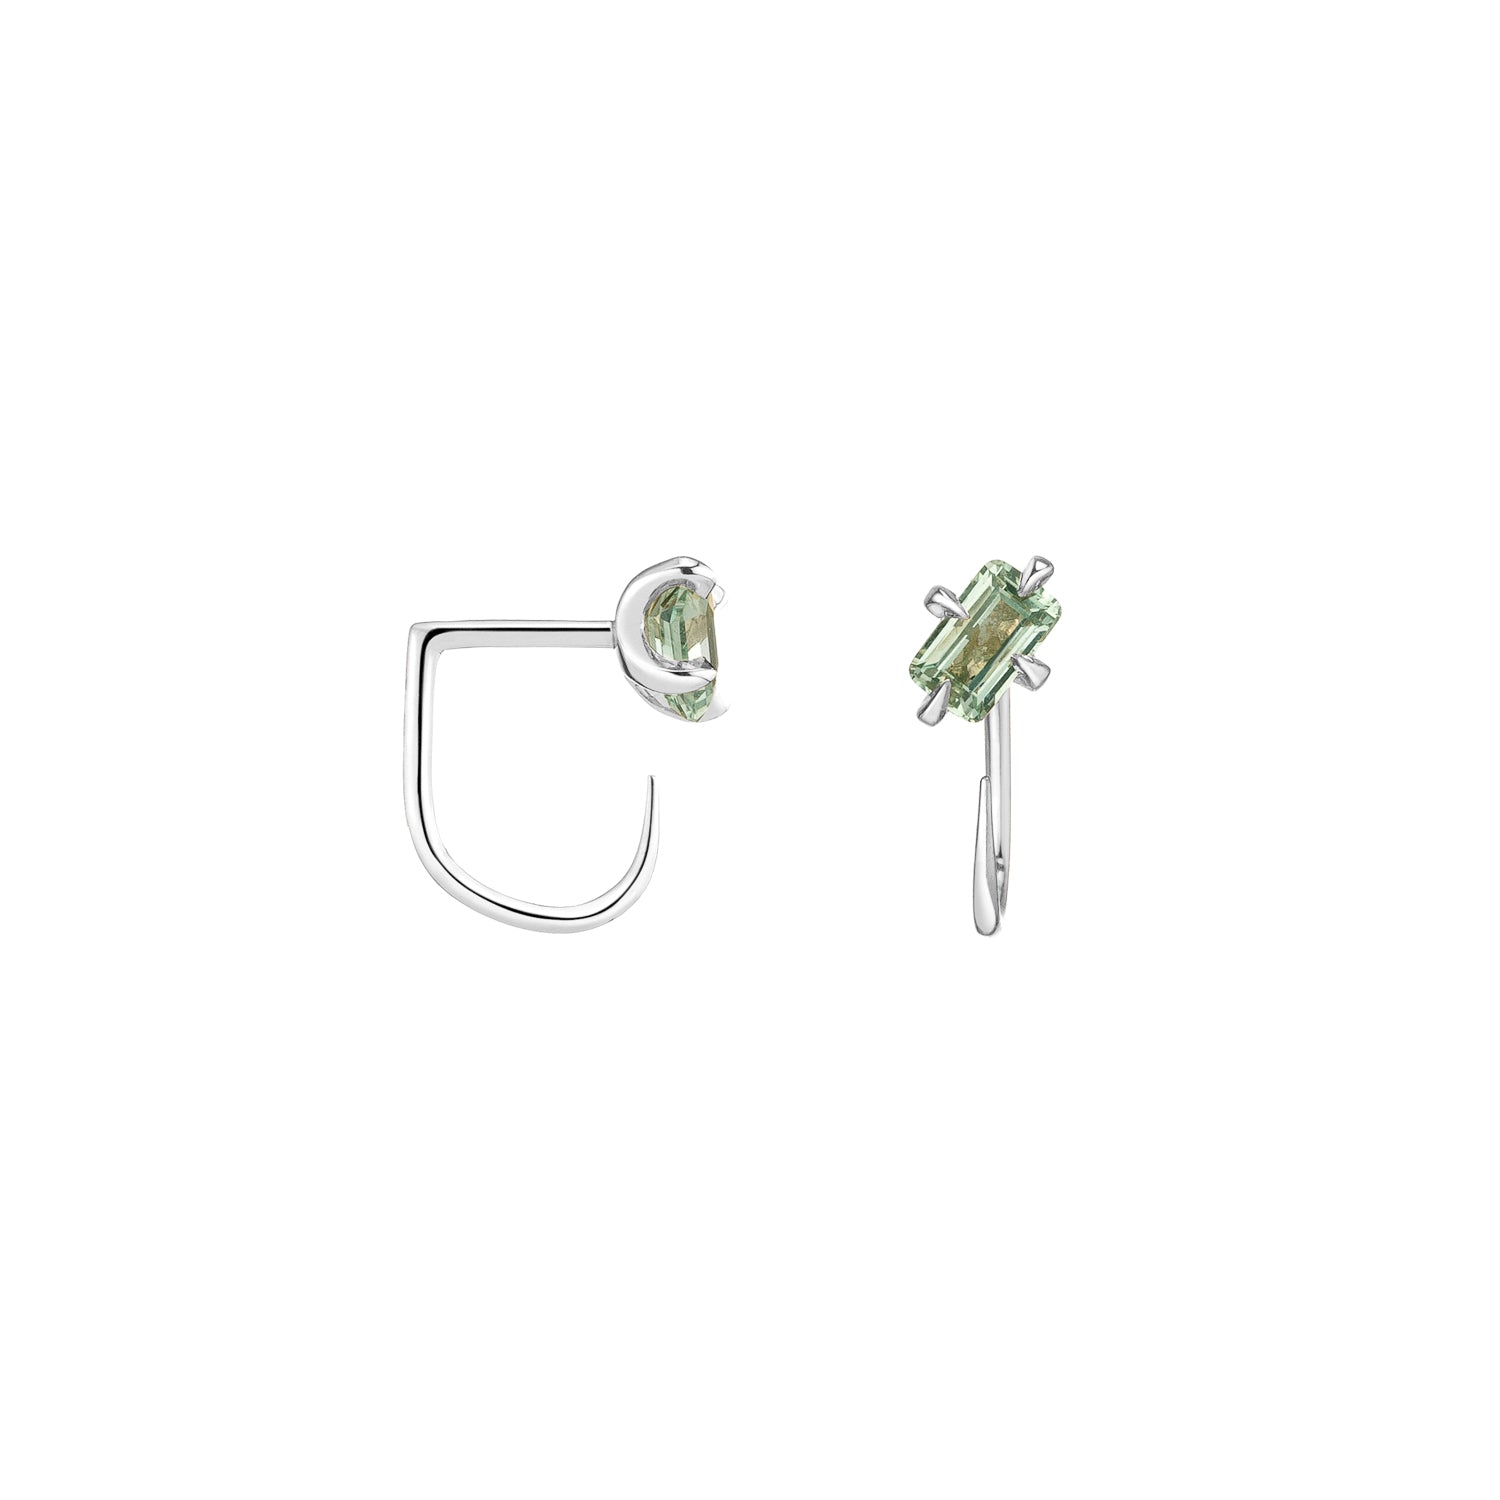 Shahla Karimi Mint Green Sapphire Emerald Cut Claw Earrings in 14K White Gold